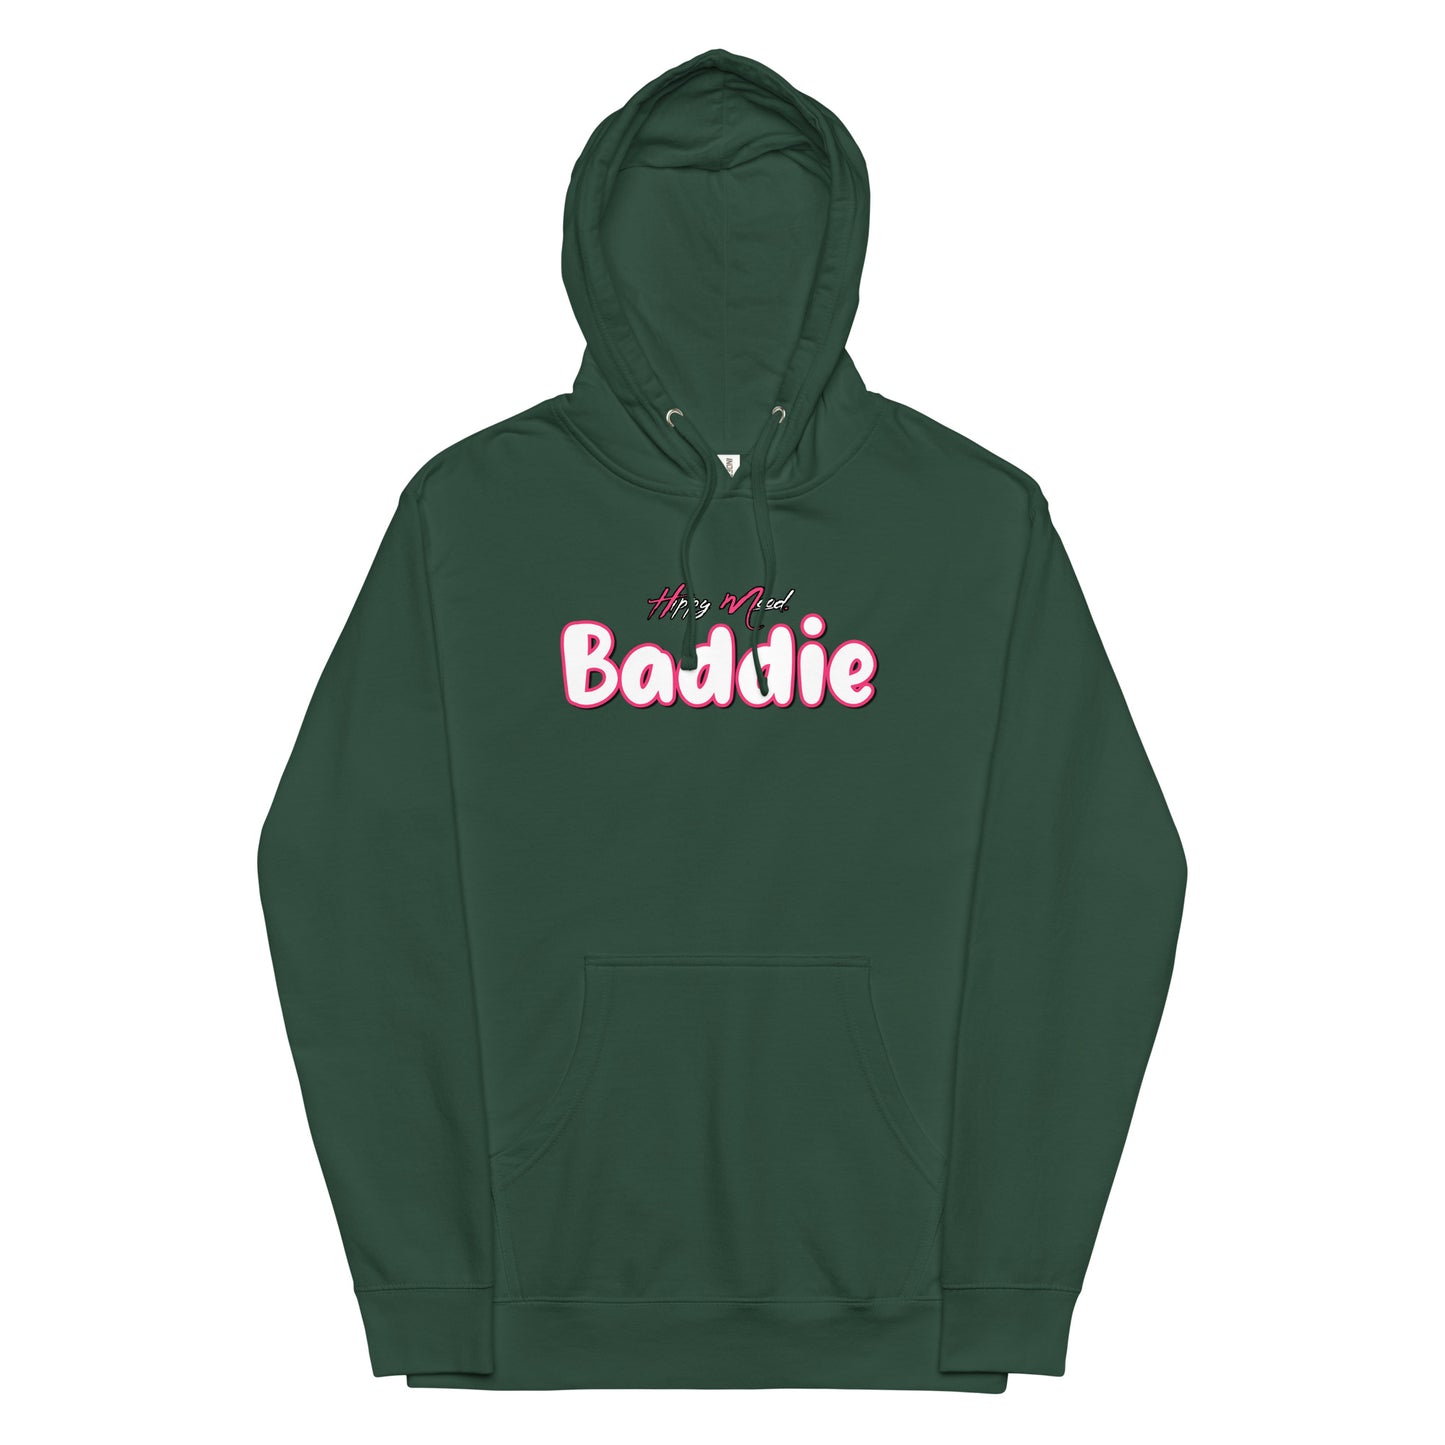 Hippy Mood Baddie | Pink | Unisex midweight hoodie